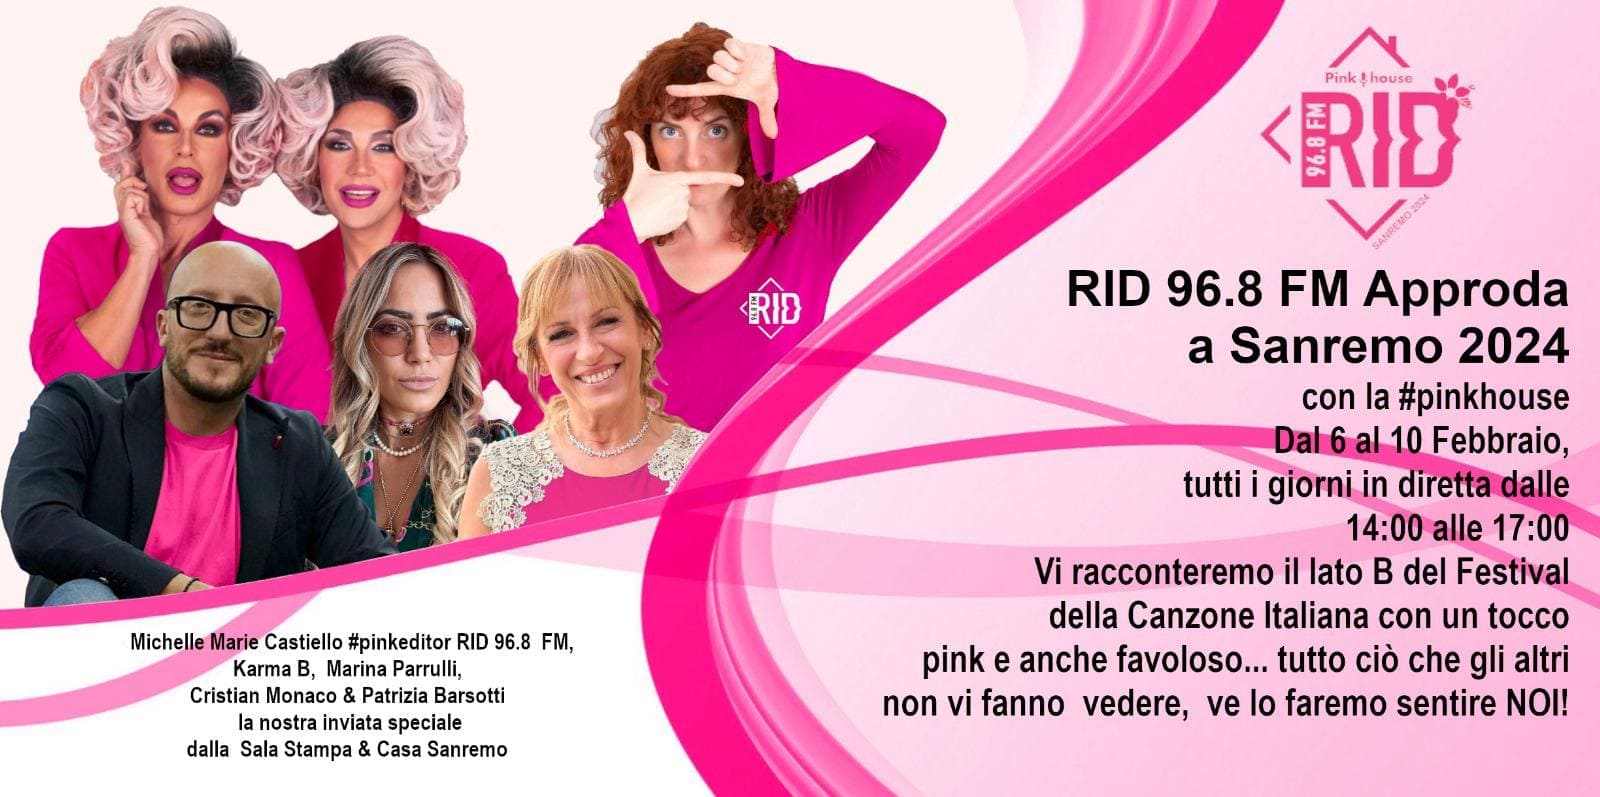 La Pink House di RID 96.8 FM suona di musica alternativamente unica a Sanremo 2024